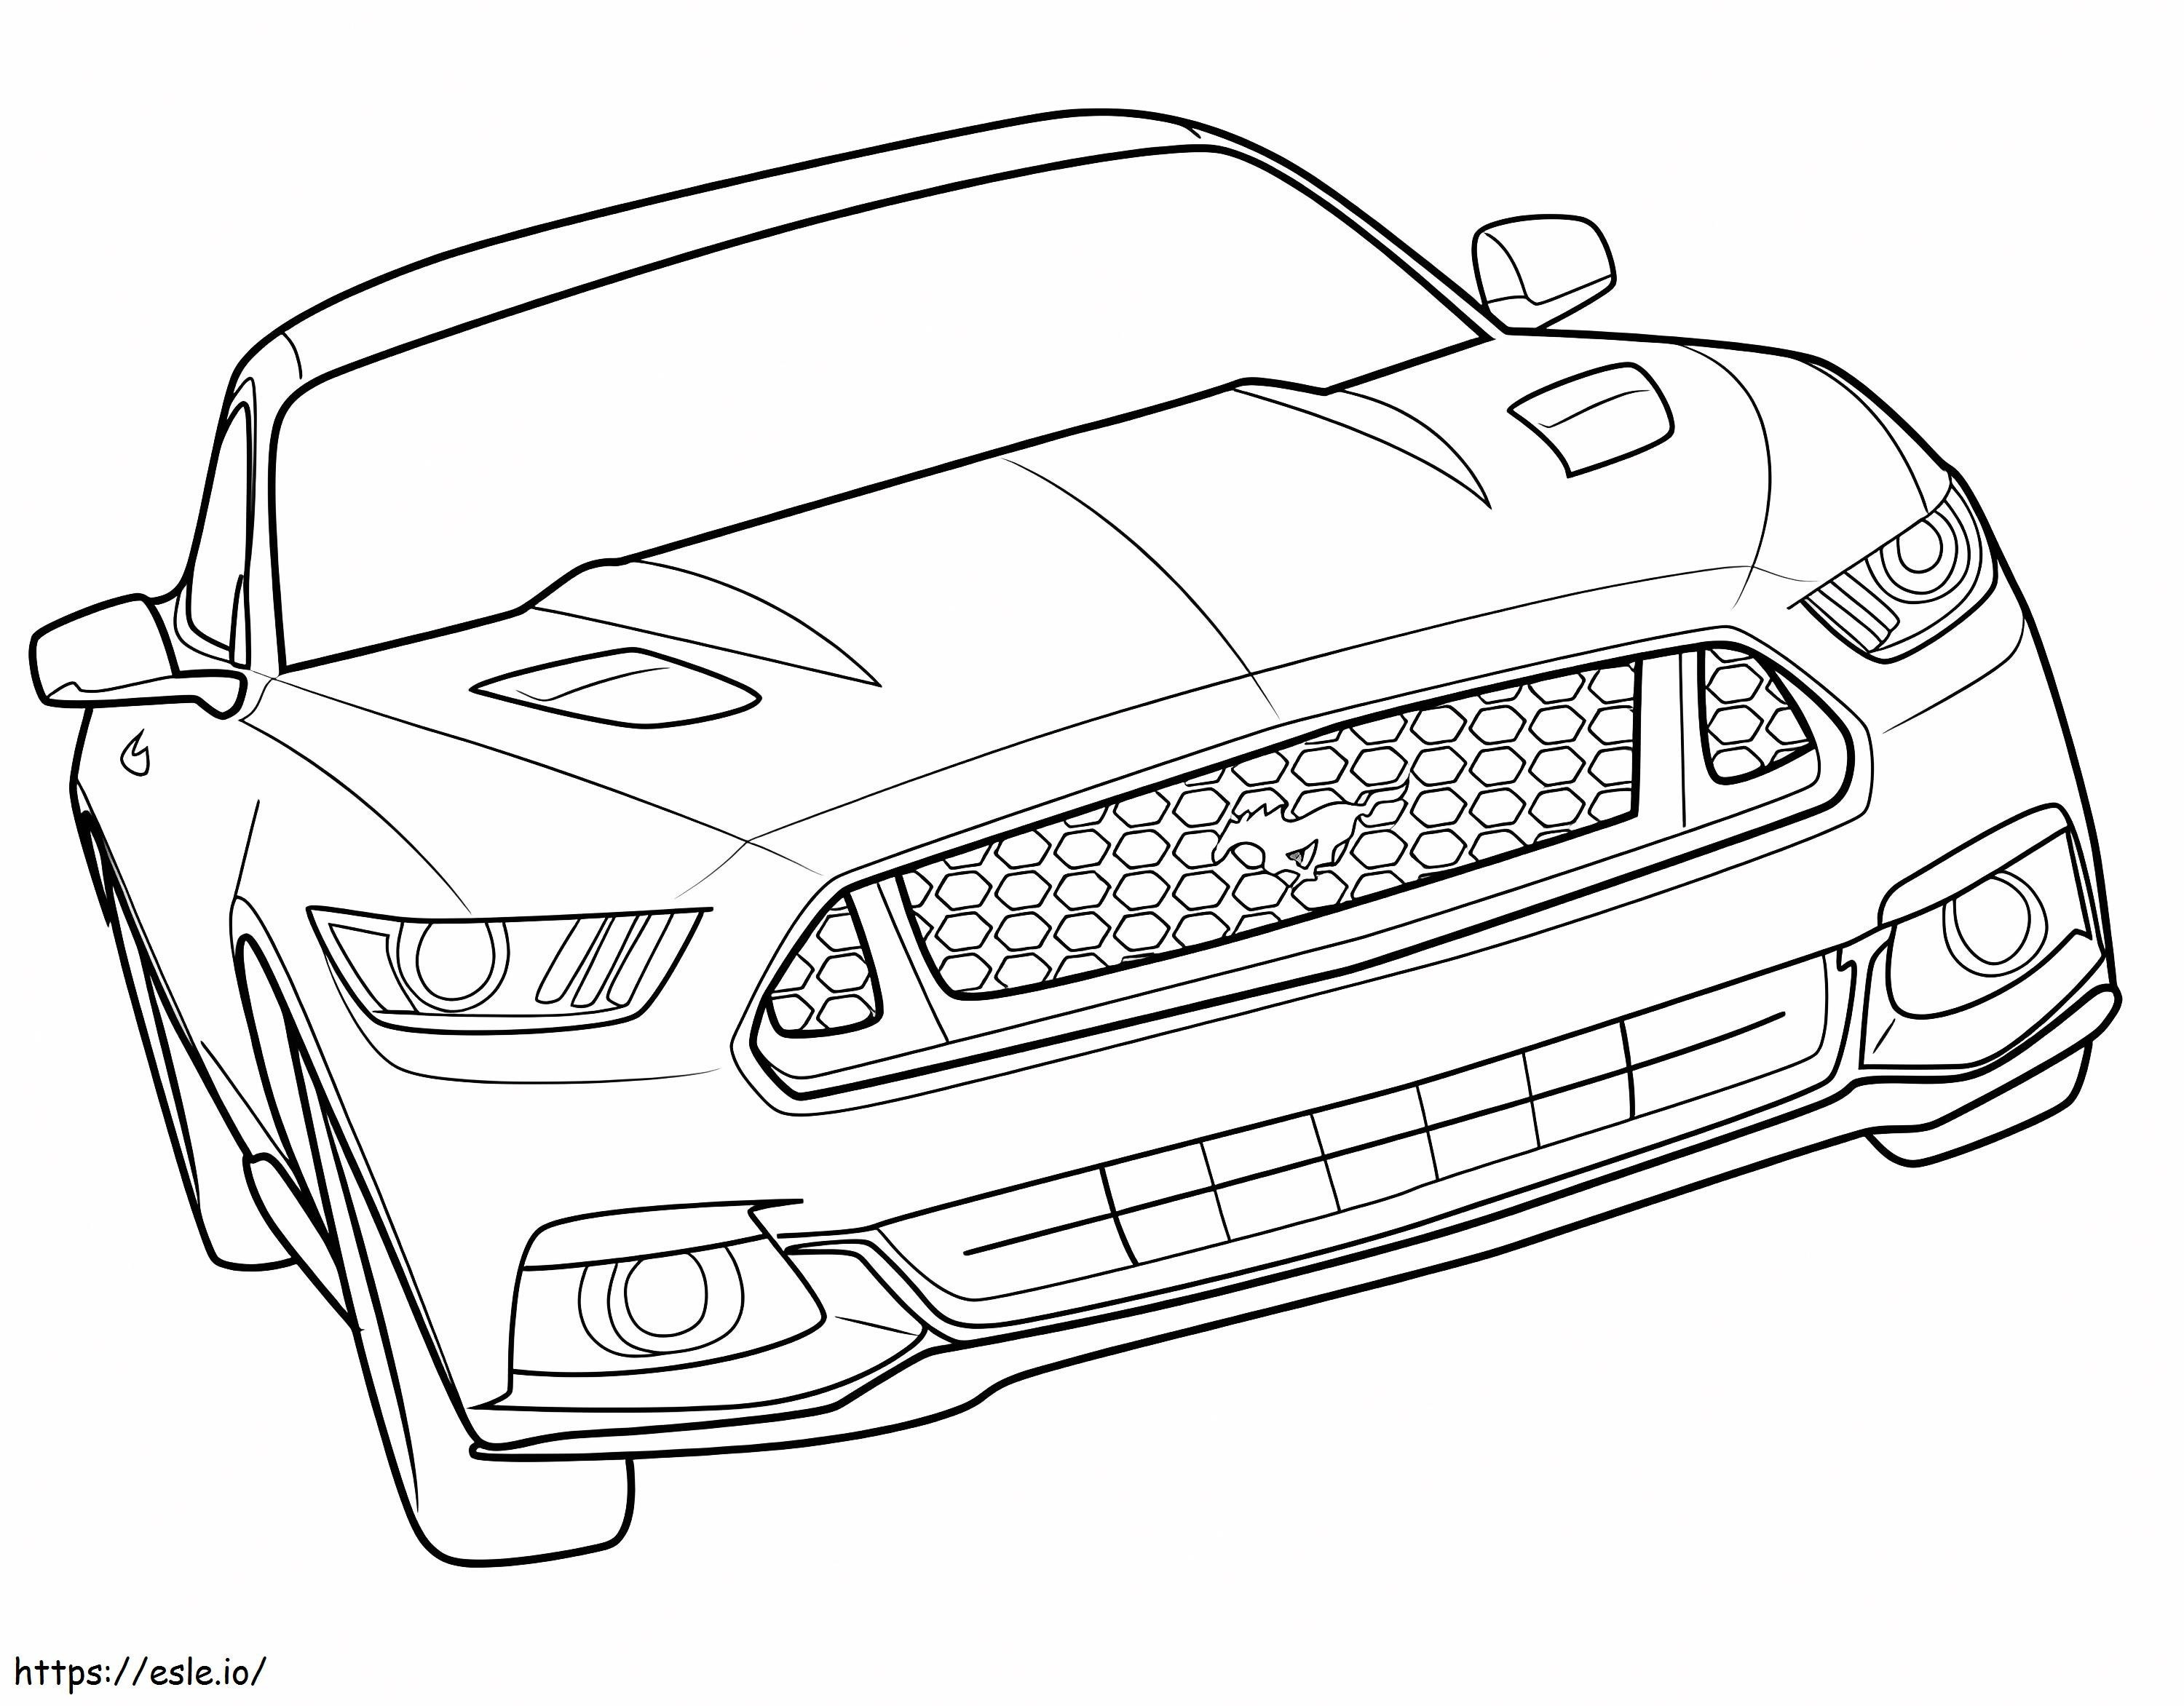 Ücretsiz Yazdırılabilir Ford Mustang boyama